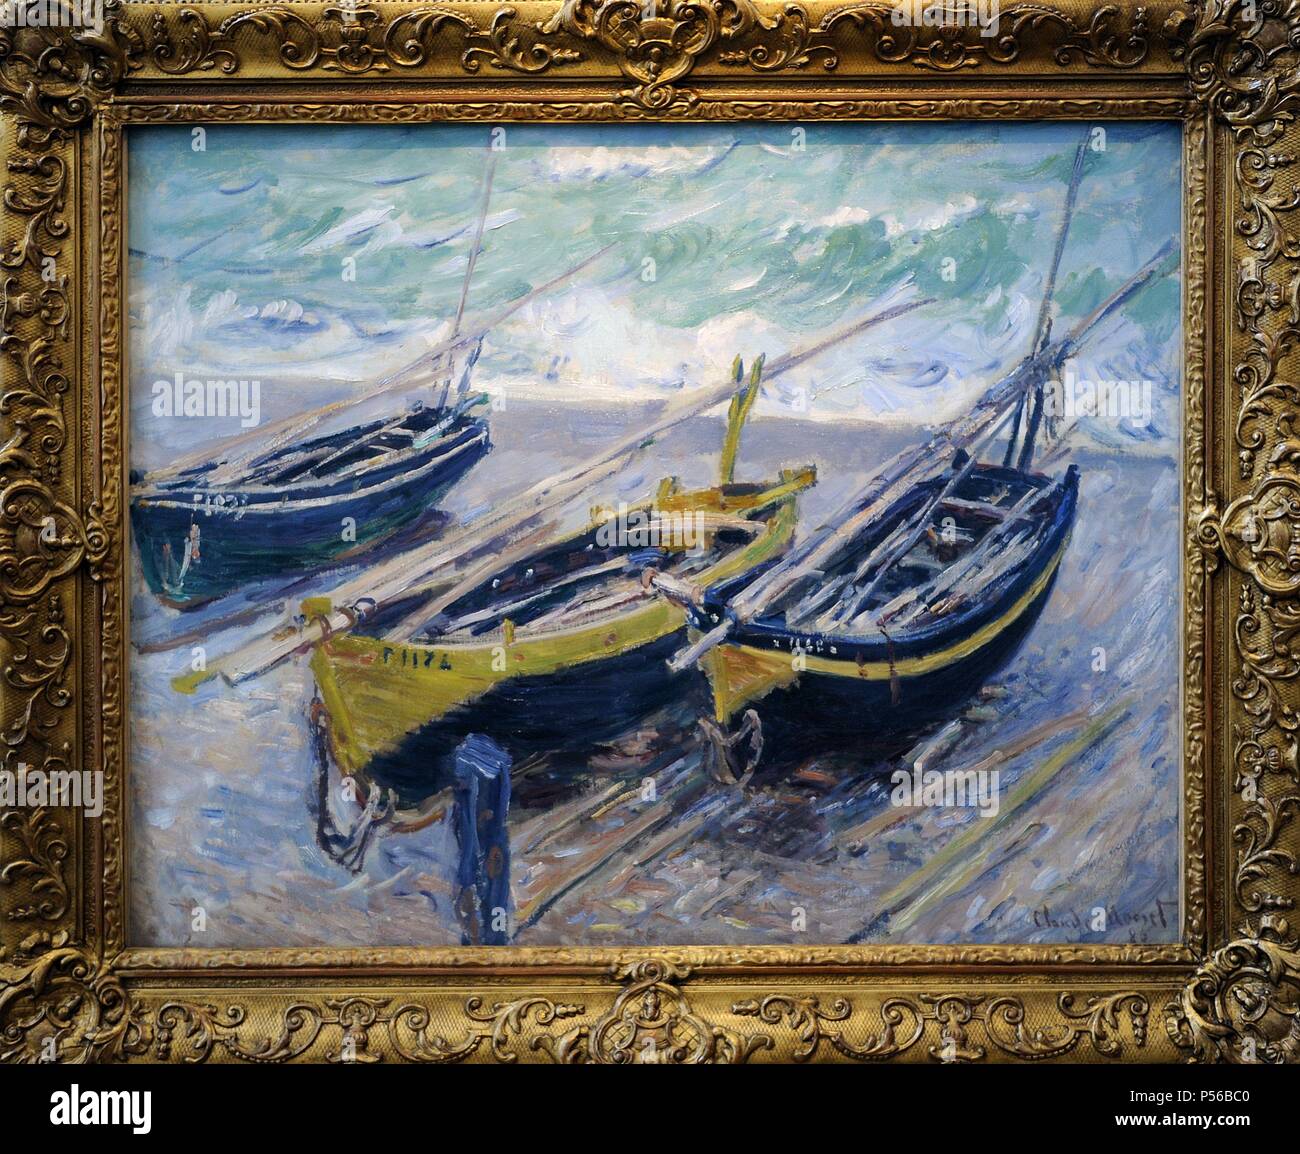 Claude Monet (1840-1926). Französische Maler Gründer der Französischen impressionistischen Malerei. Drei Fischerboote, 1886. Öl auf Leinwand. Museum der Bildenden Künste Budapest. Ungarn. Stockfoto